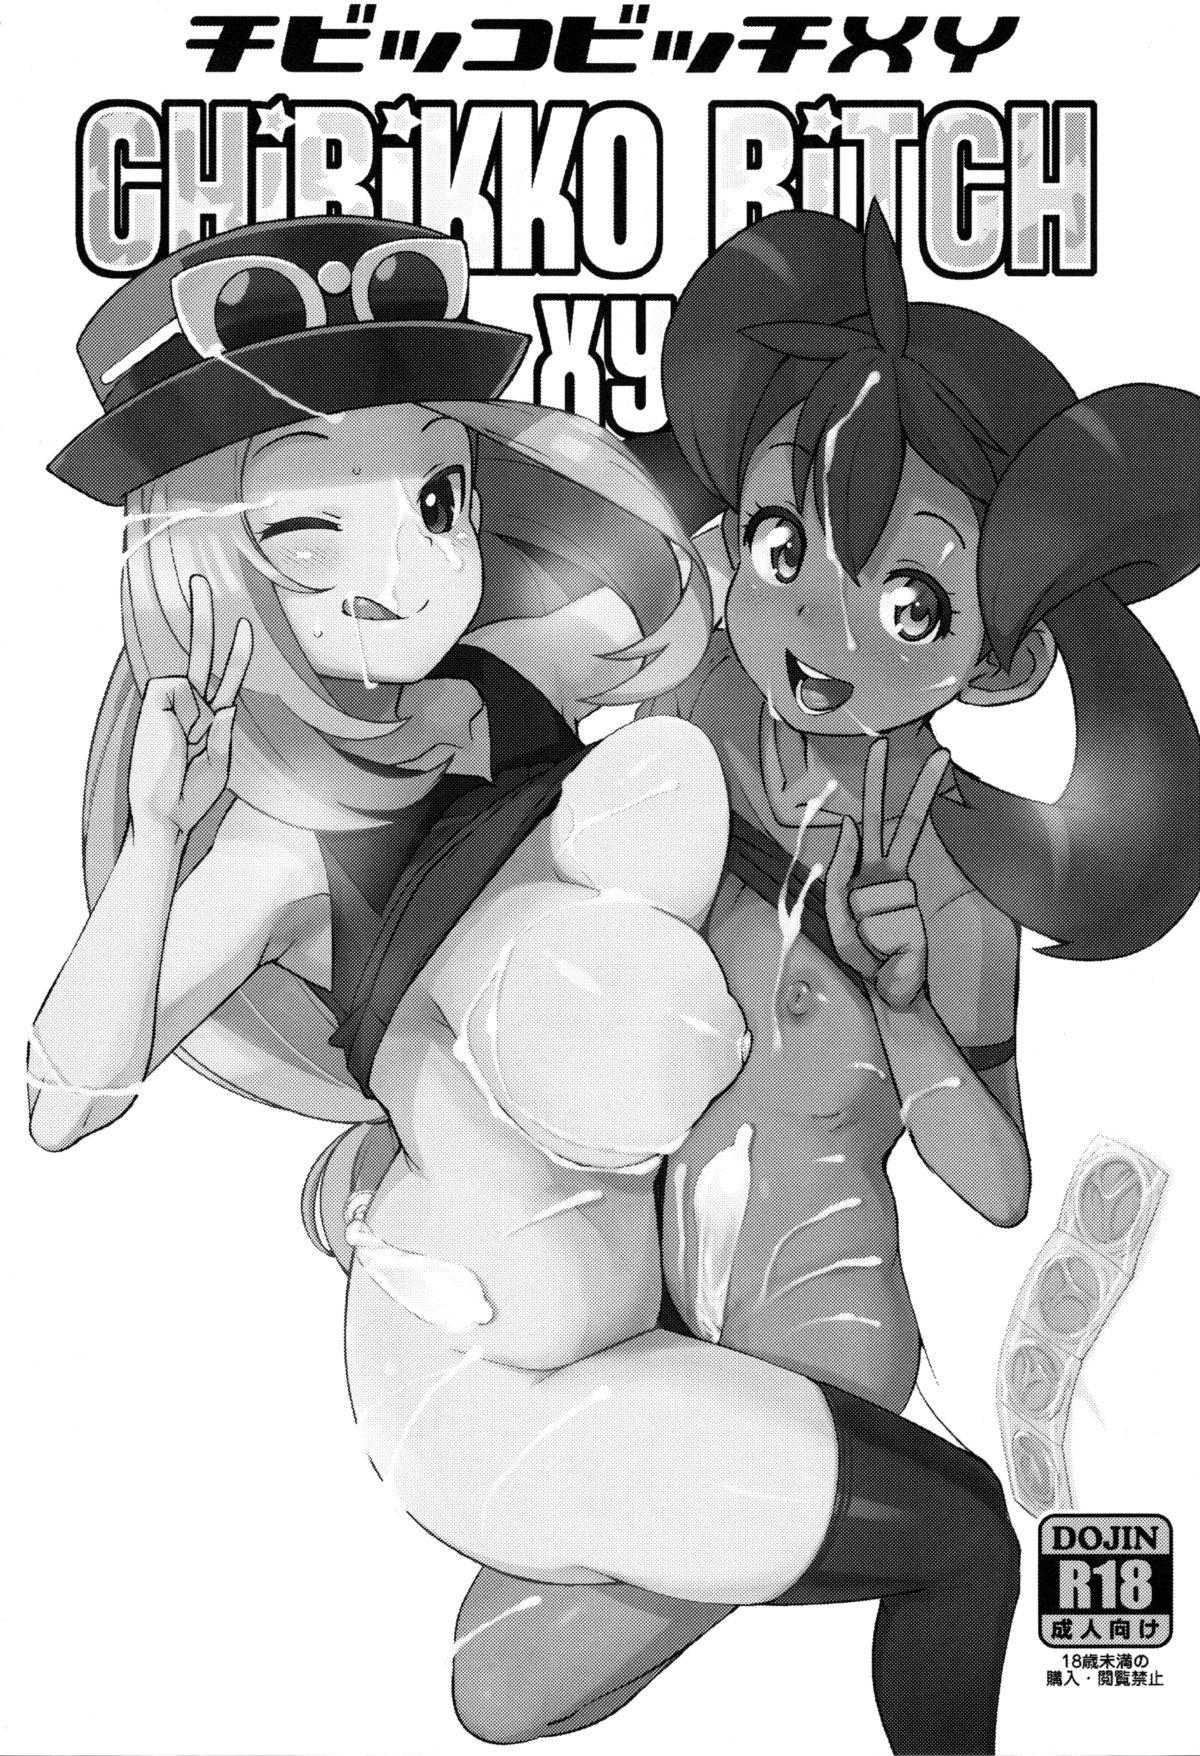 Asian Babes Chibikko Bitch XY - Pokemon Harcore - Page 2